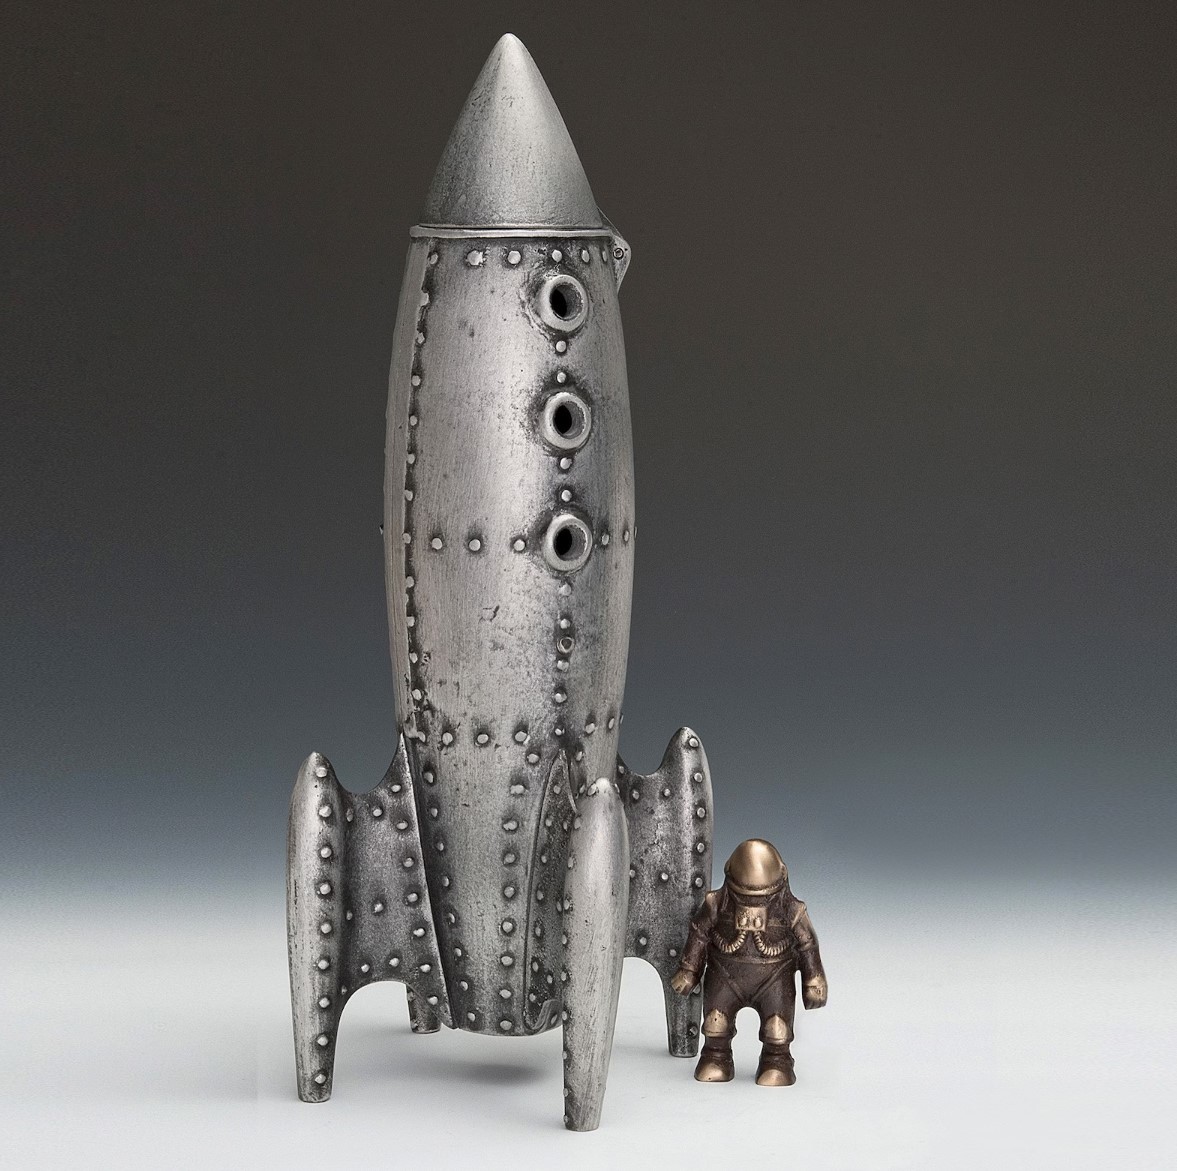 Mondrakete und Astronautenfigur aus Metall vom Künstler gefertigt, handgemachte Werke, Innere, verschiedene Waren, Ornament, Objekt